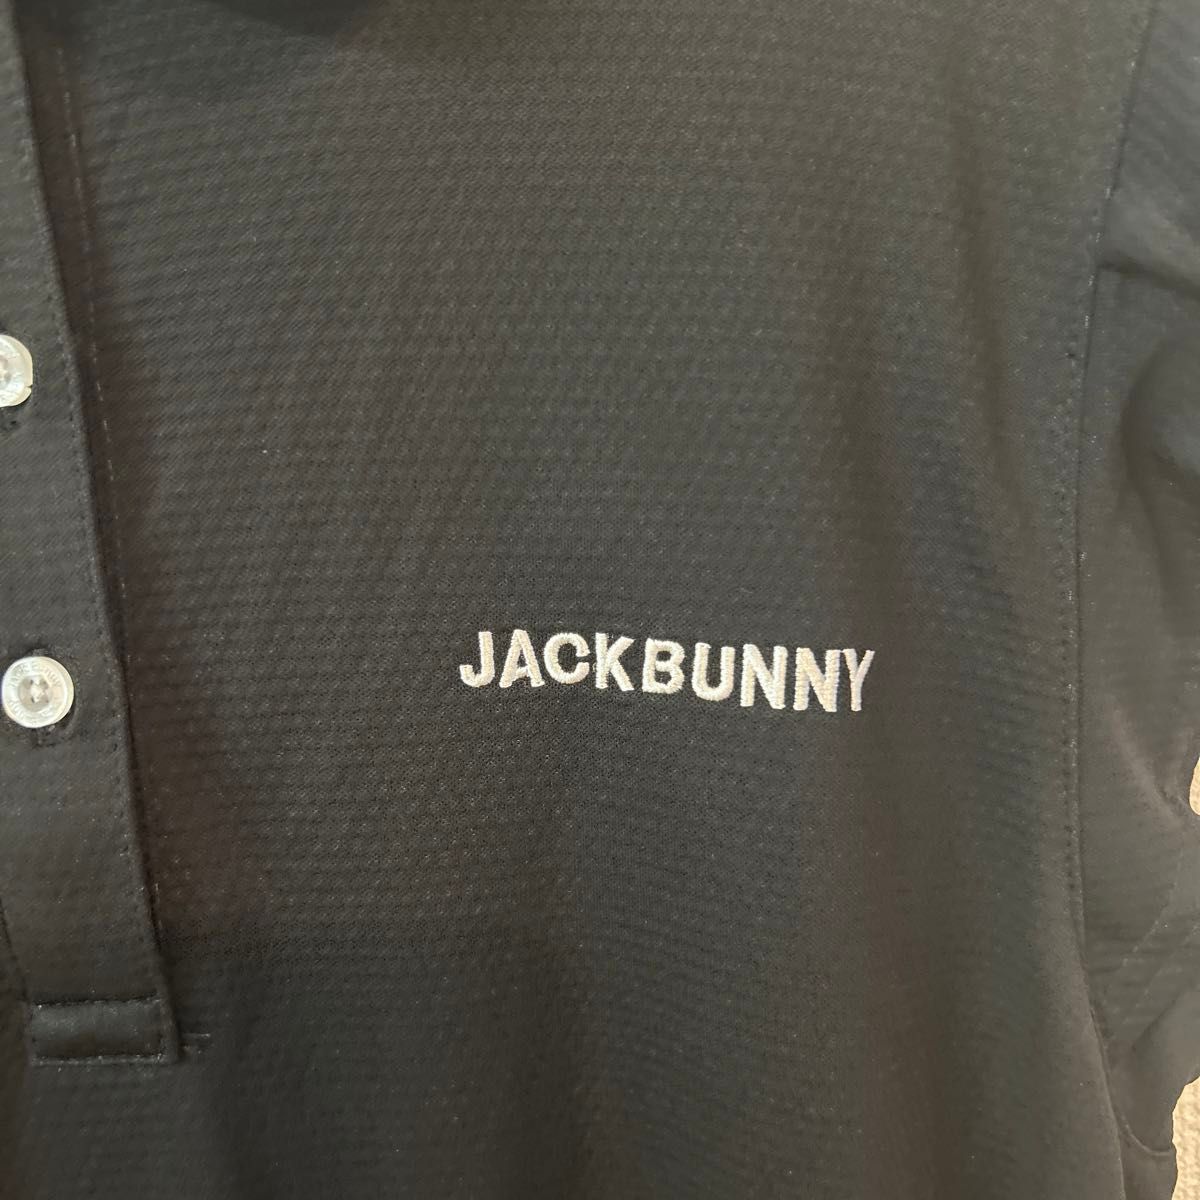 ジャックバニー Jack Bunny!! ハニカムメッシュ ノースリーブワンピース レディス